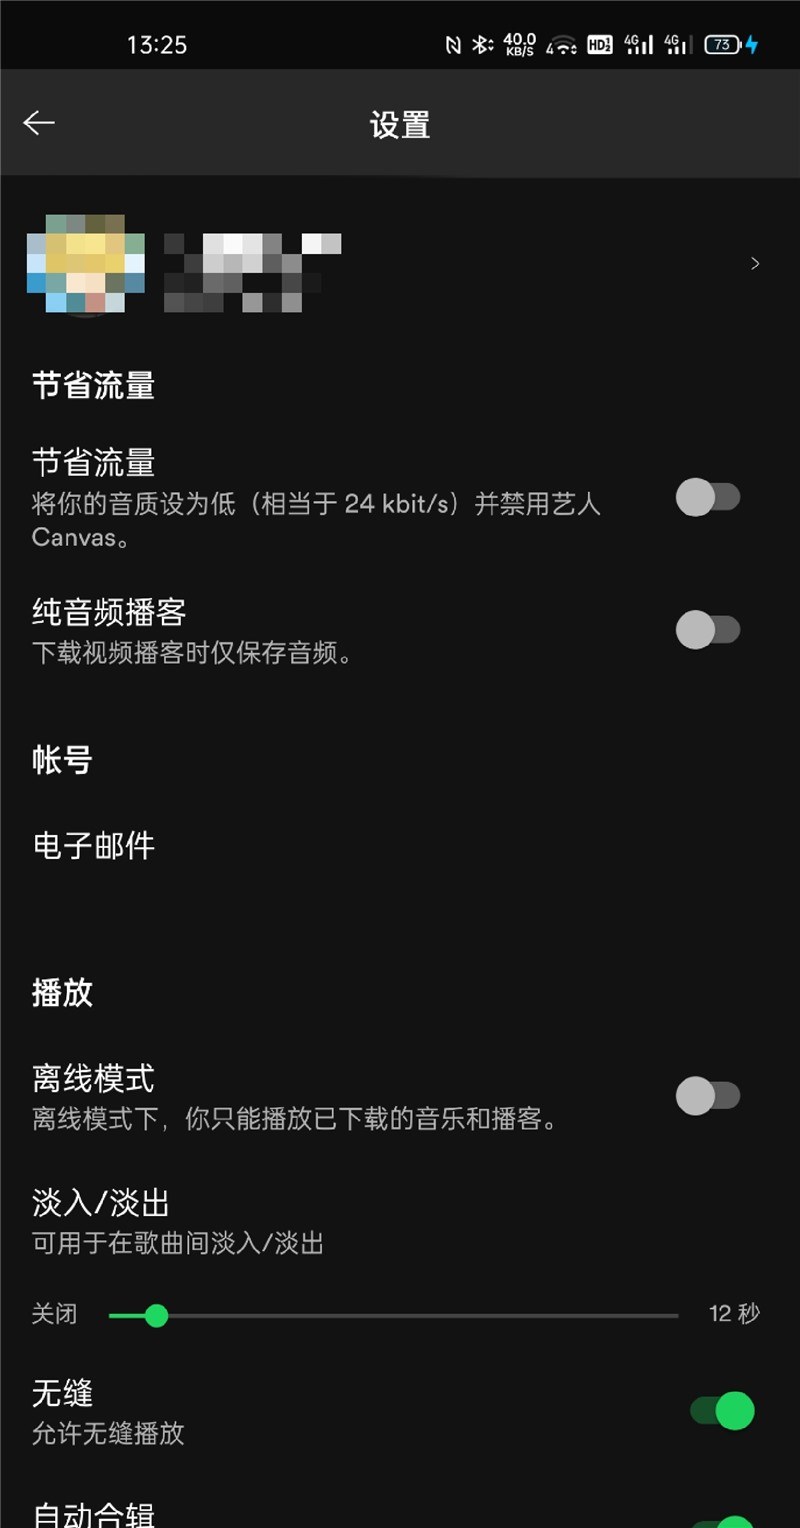 流媒体音乐 Spotify App 正式支持简体中文